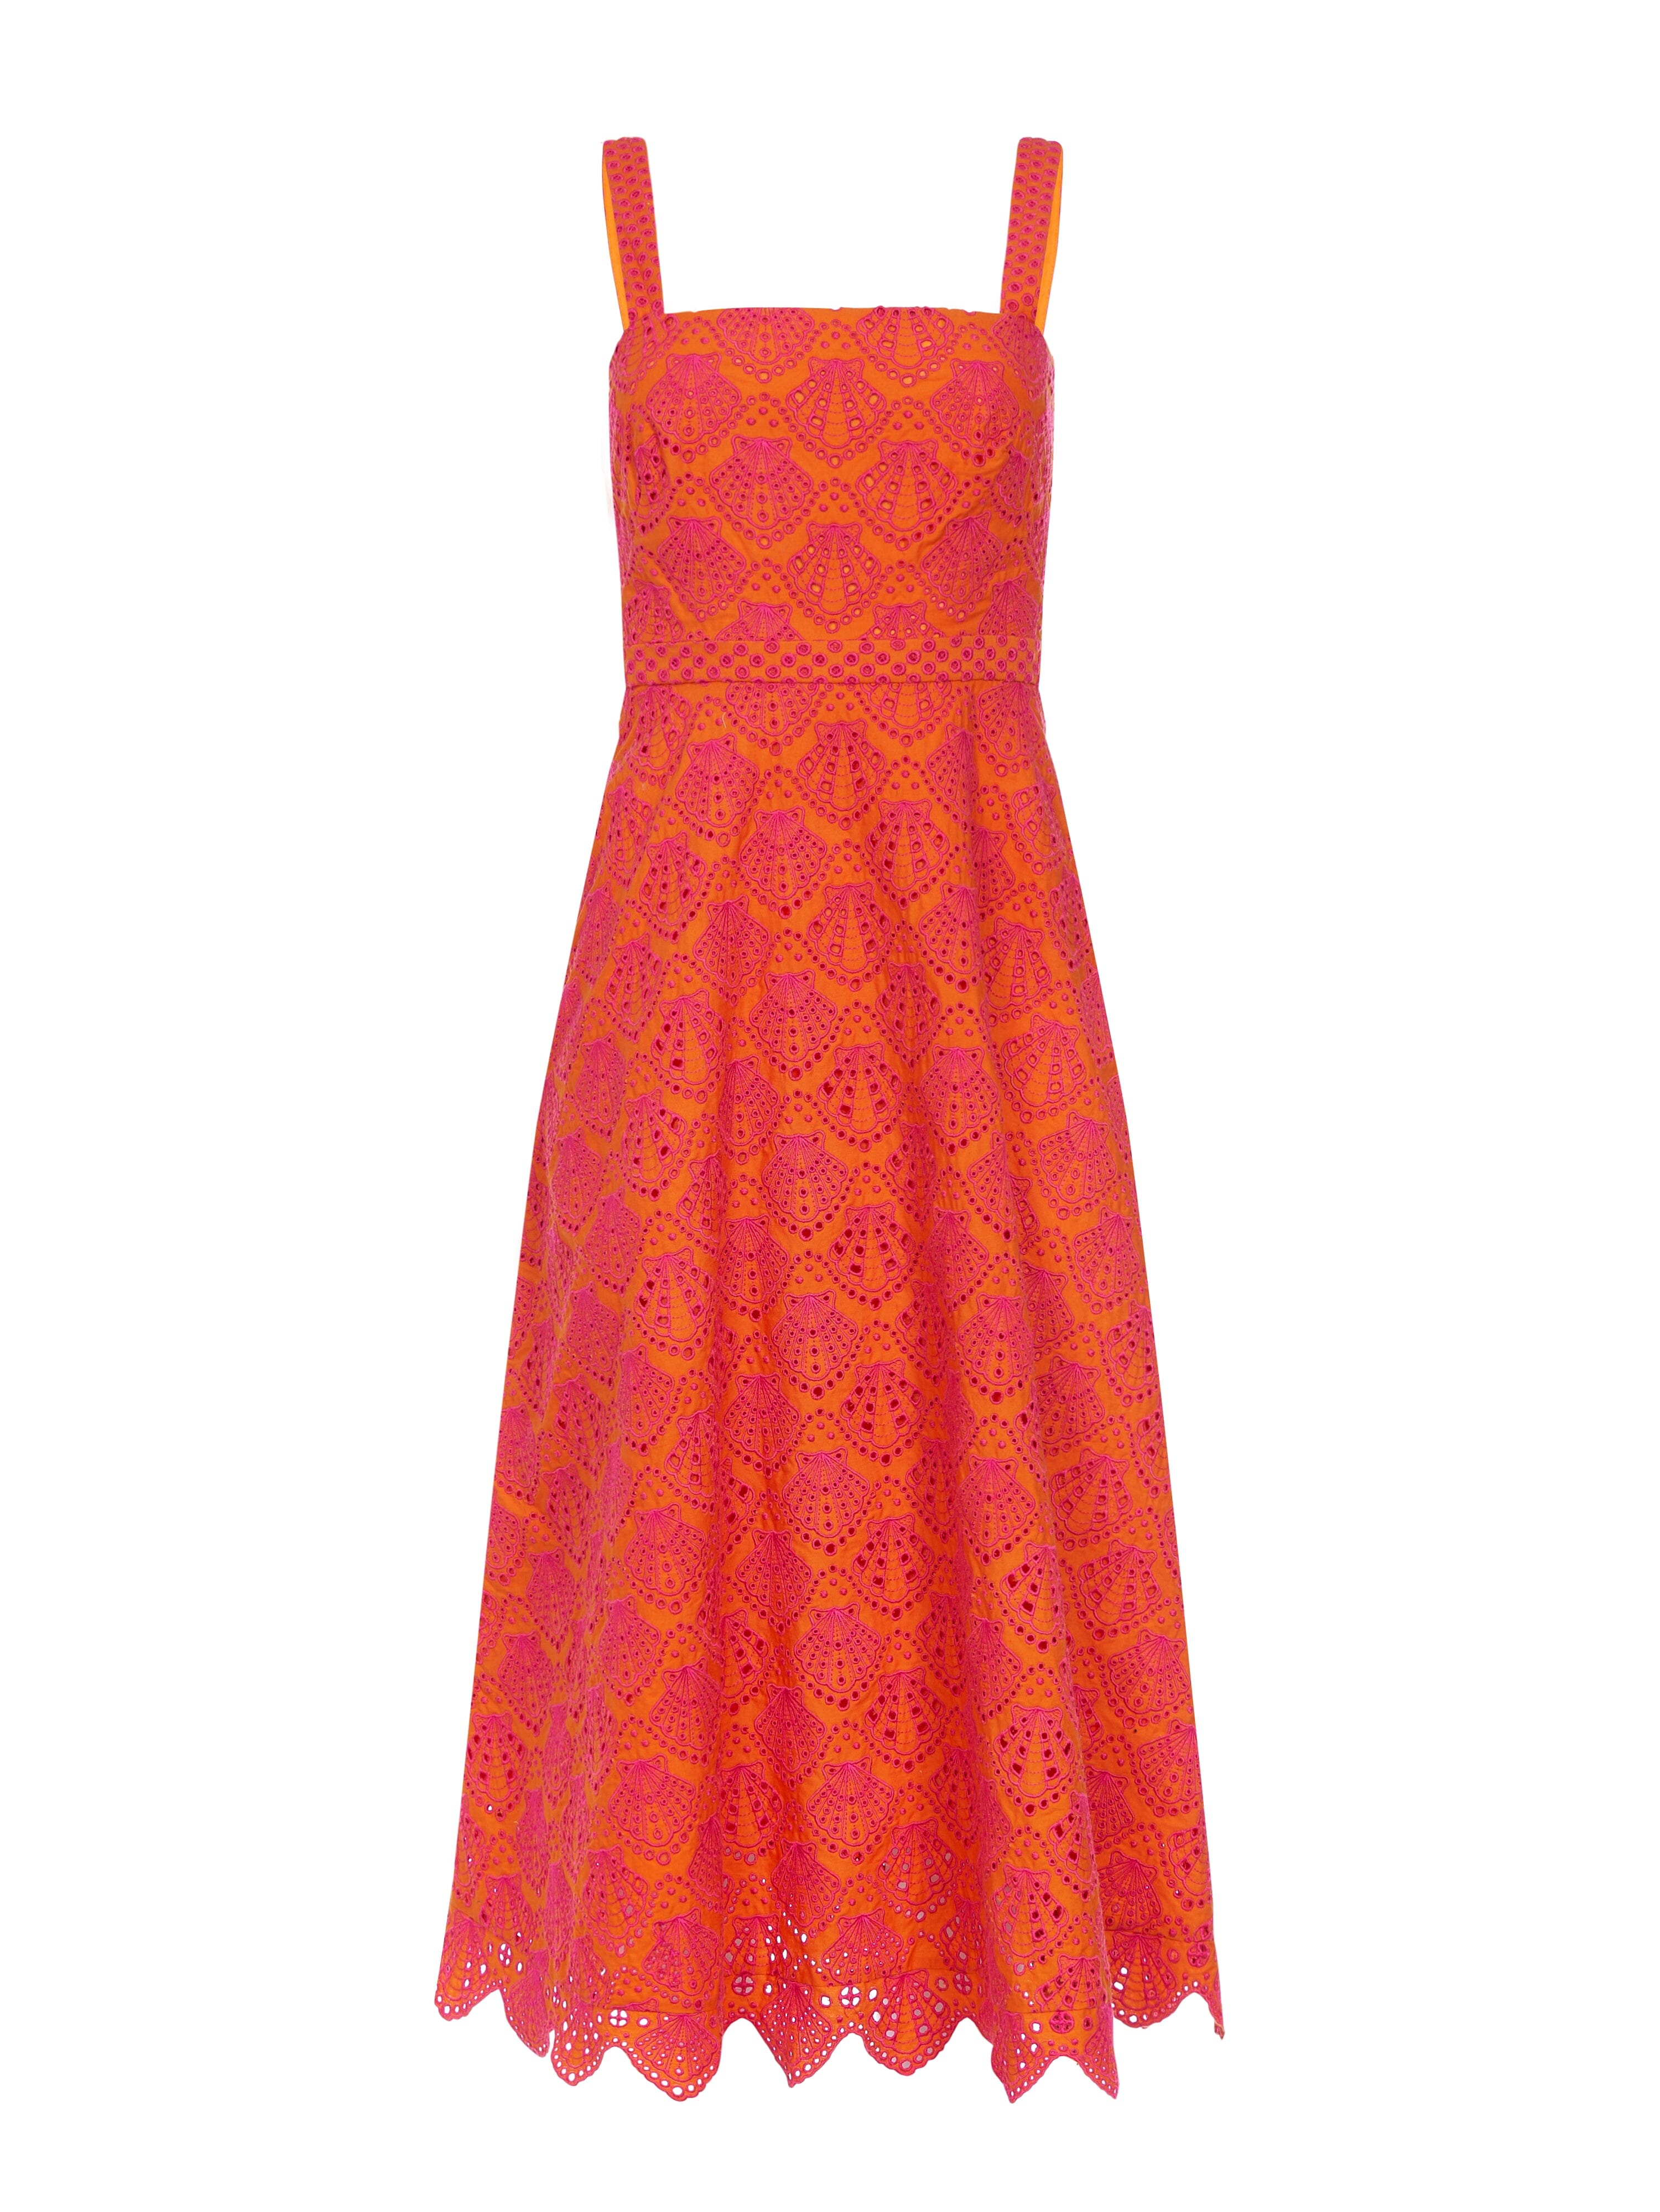 Aubrey Dress in Orange Berry